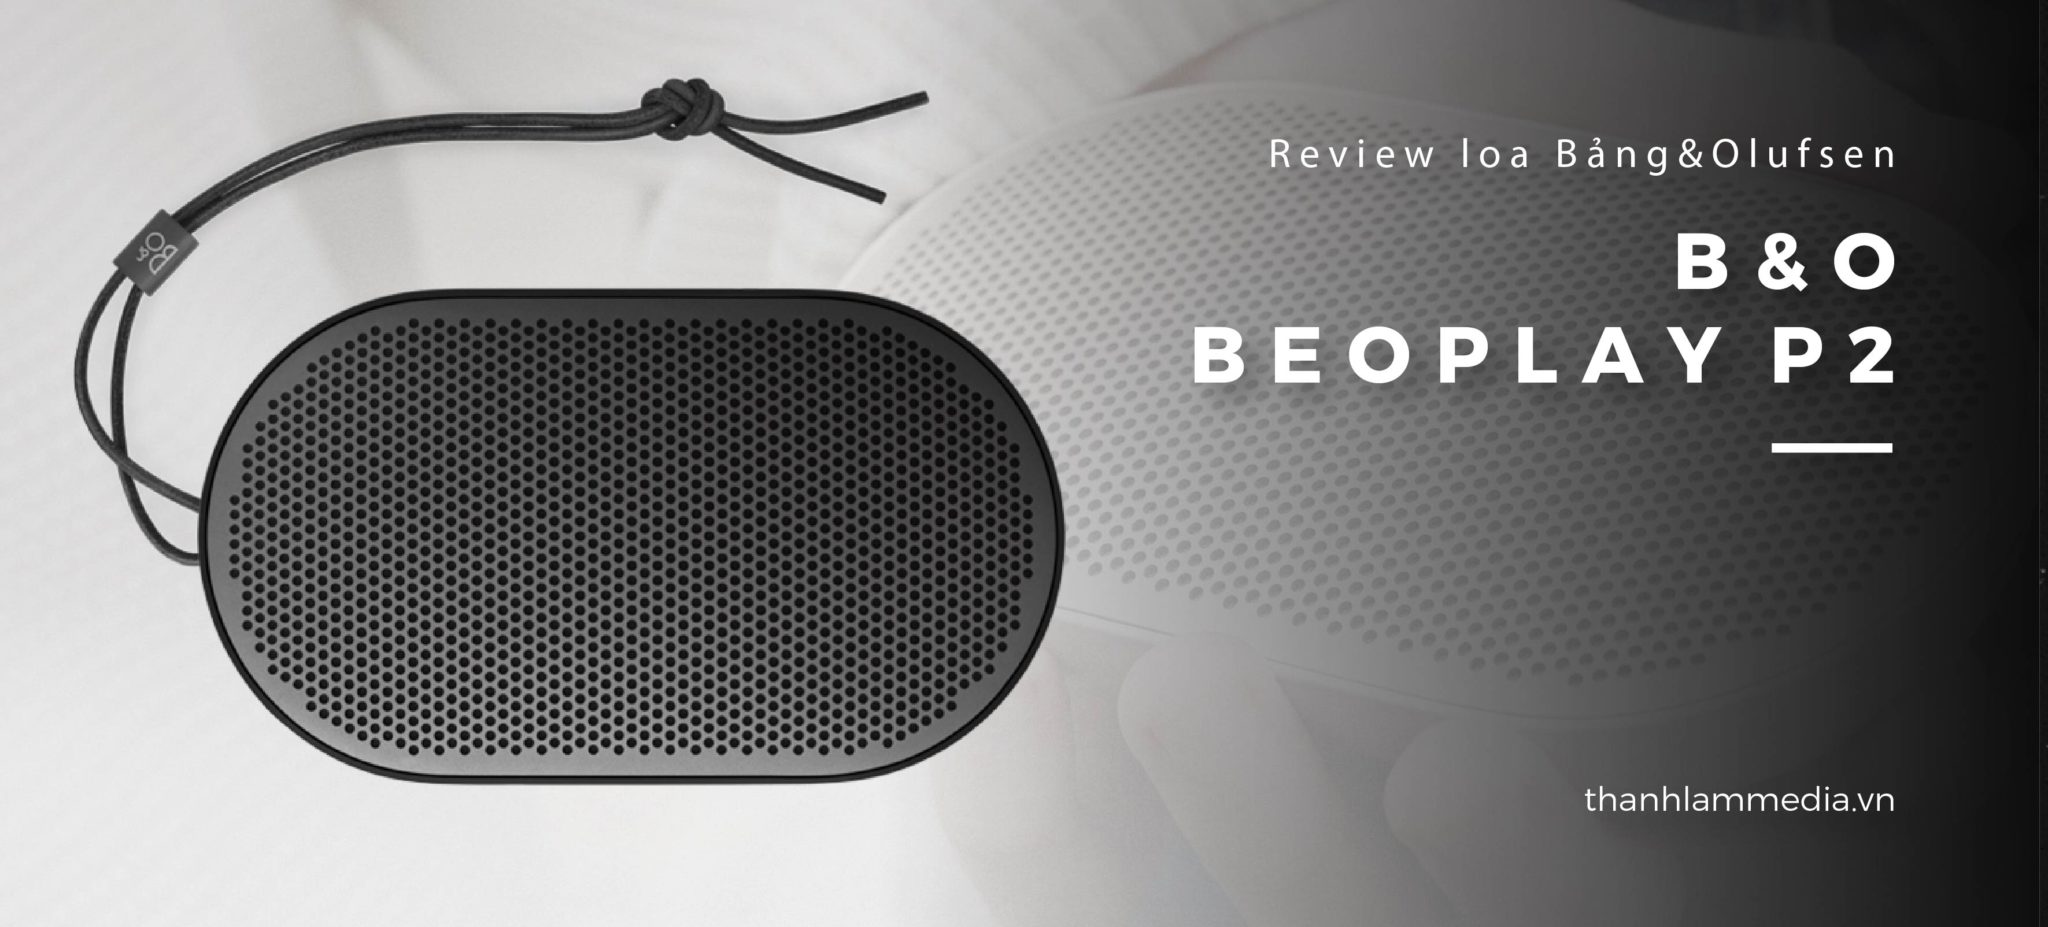 Loa B&O Beoplay P2: Thiết kế nhỏ gọn, âm thanh ấn tượng 12